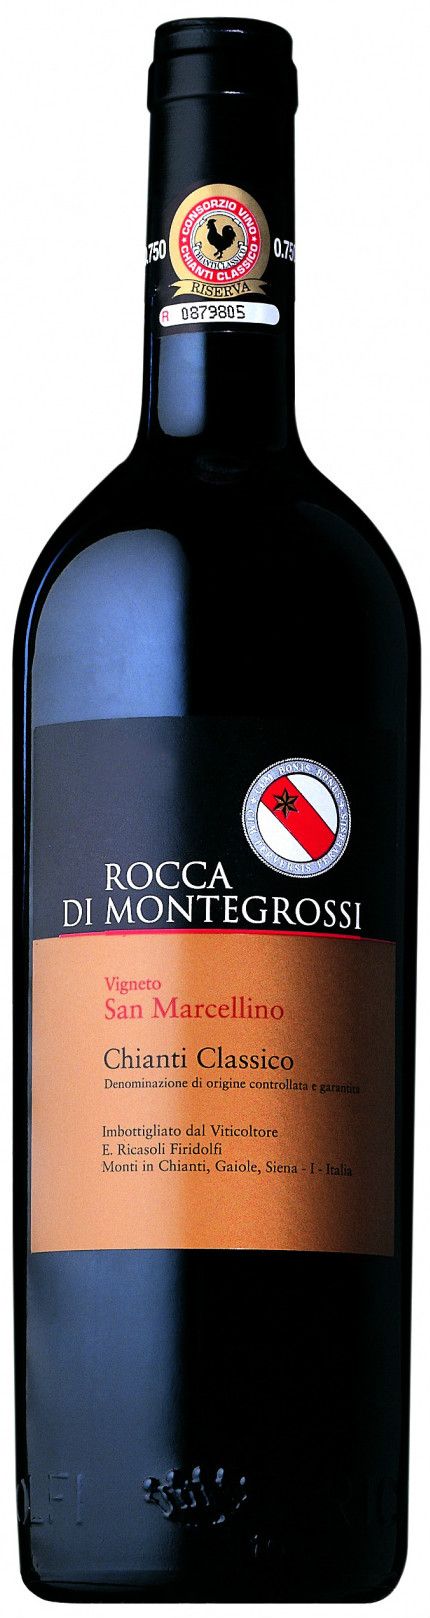 Rocca Di Montegrossi, Vigneto San Marcellino Chianti Classico, 2006